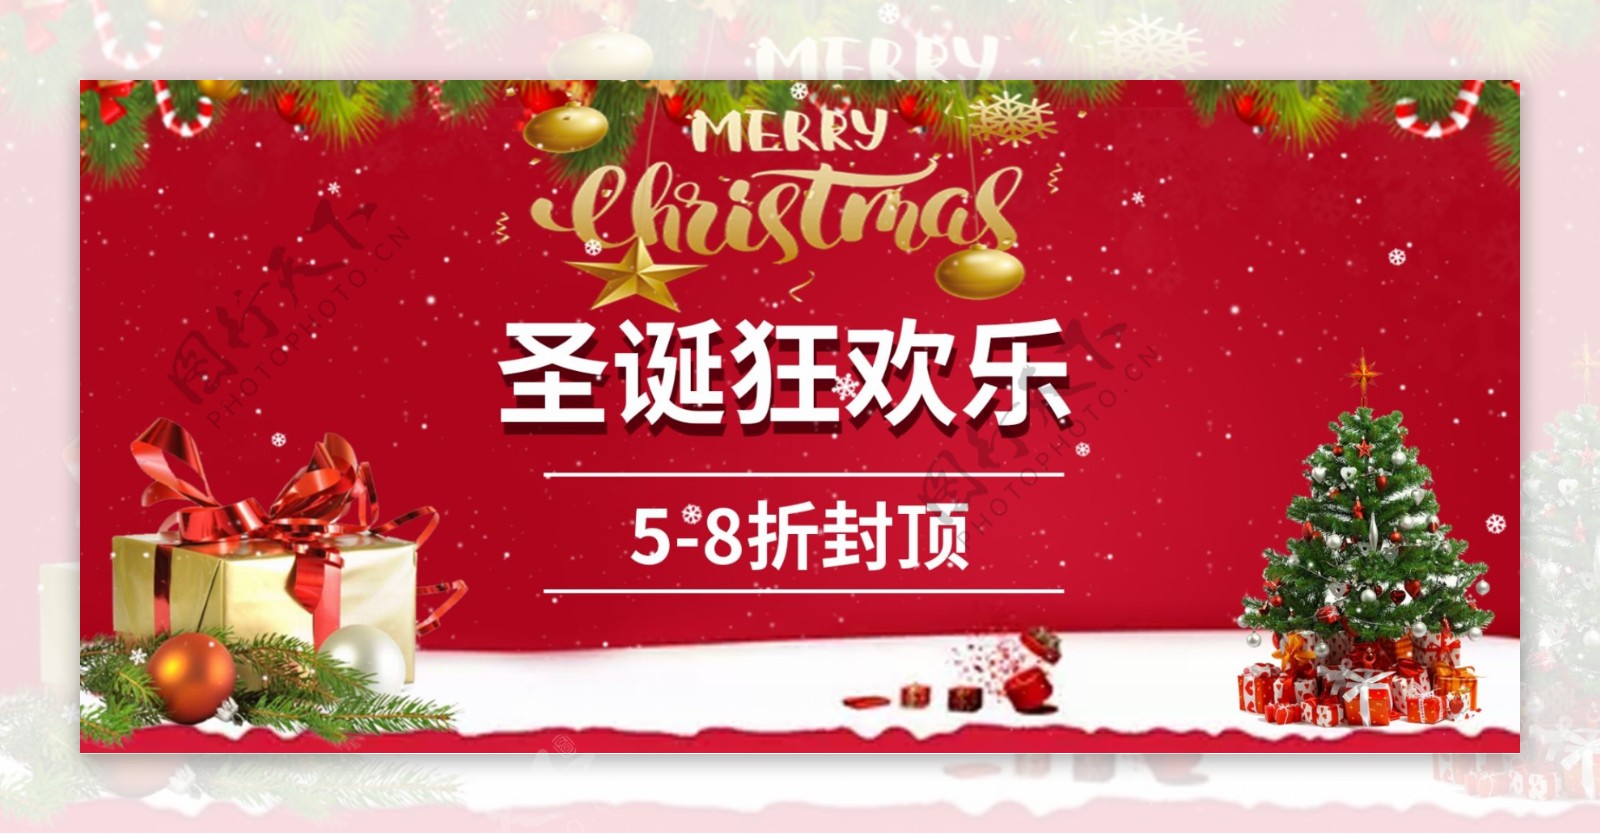 电商淘宝圣诞狂欢主题banner海报